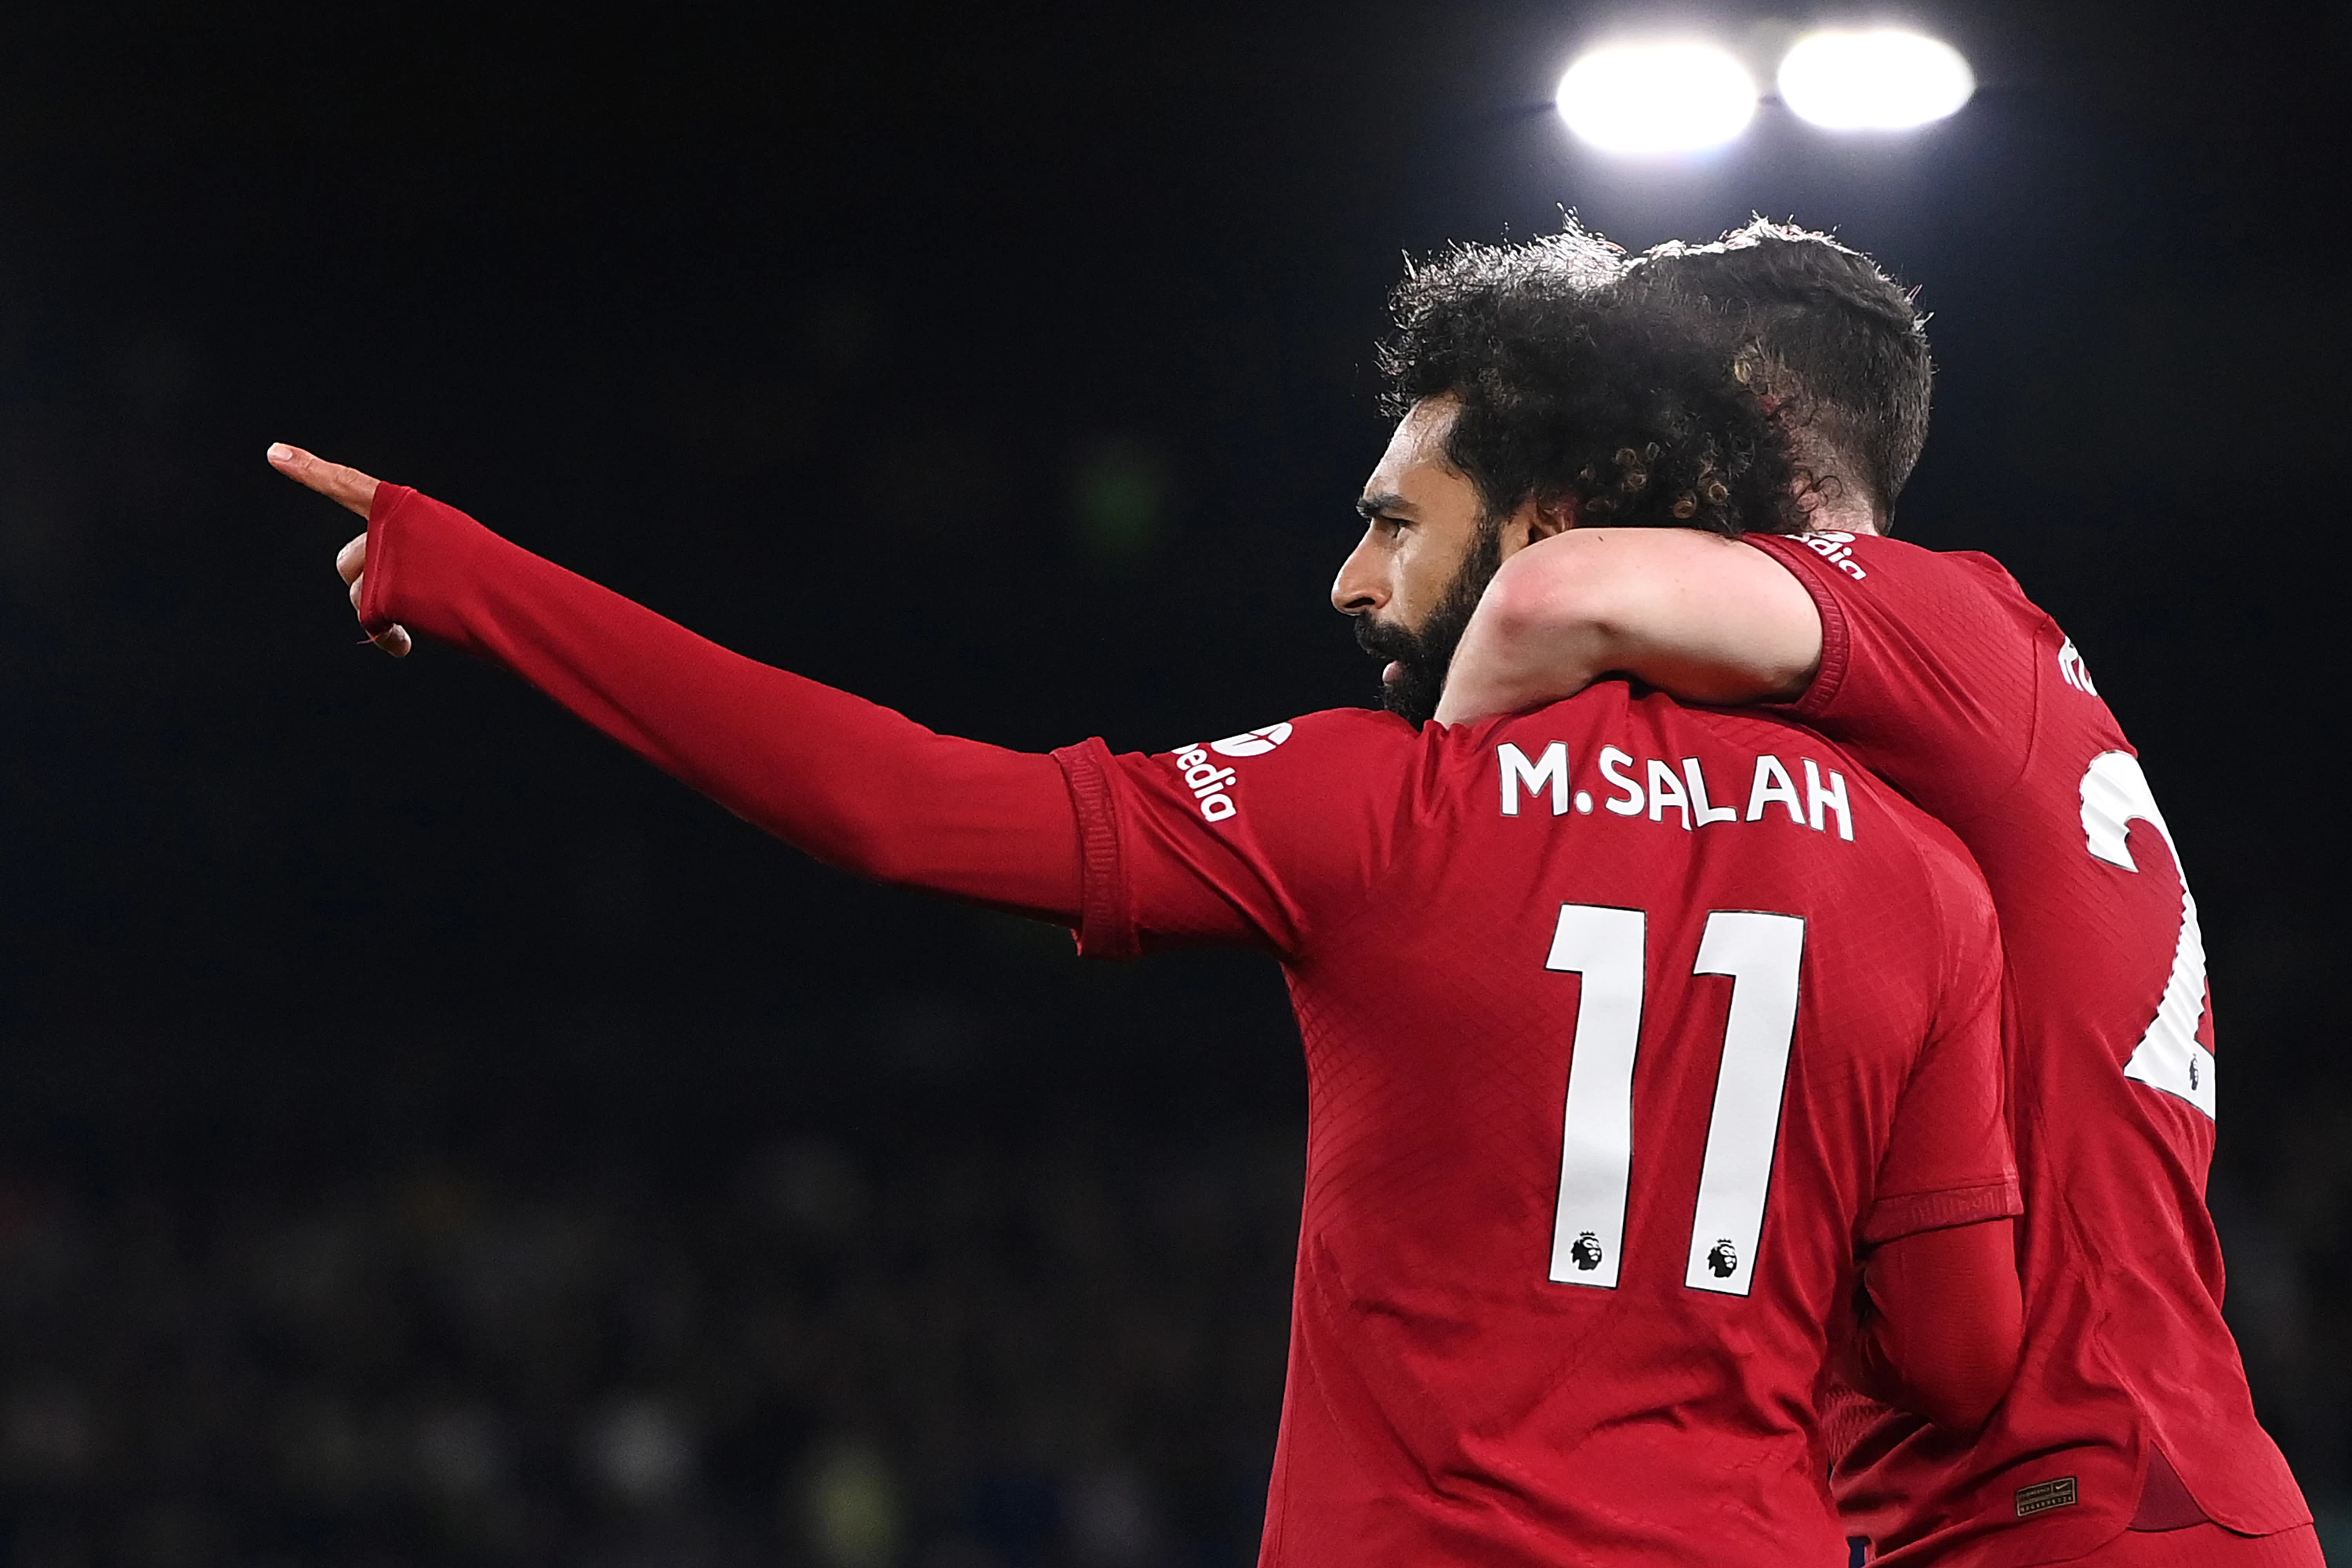 محمد صلاح به رکورد بیشترین گل با پای چپ در تاریخ لیگ برتر رسید